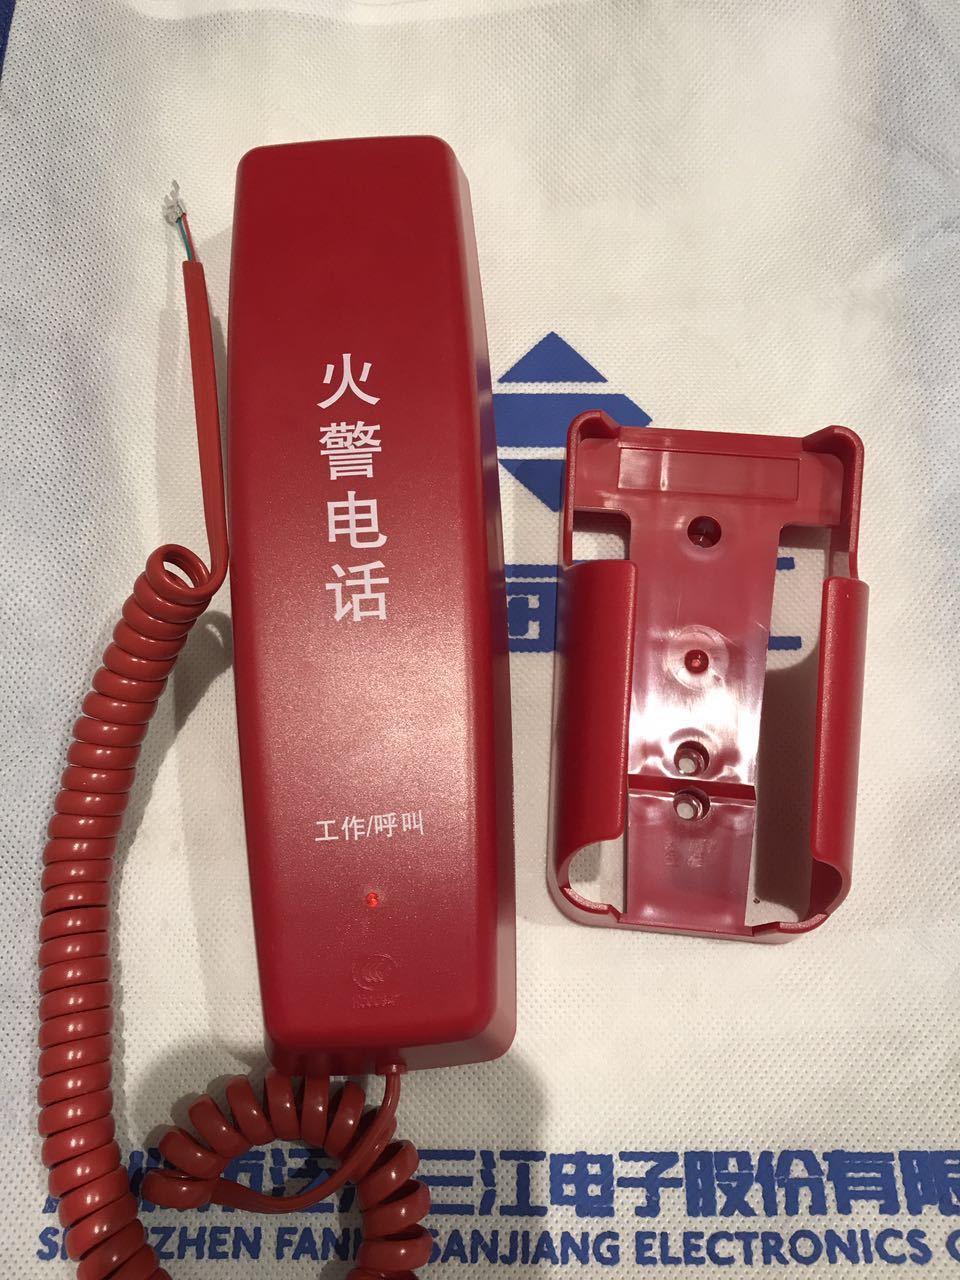 凯拓消防电话分机DH9272适用泛海三江/奥瑞那电话主机DH9261使用